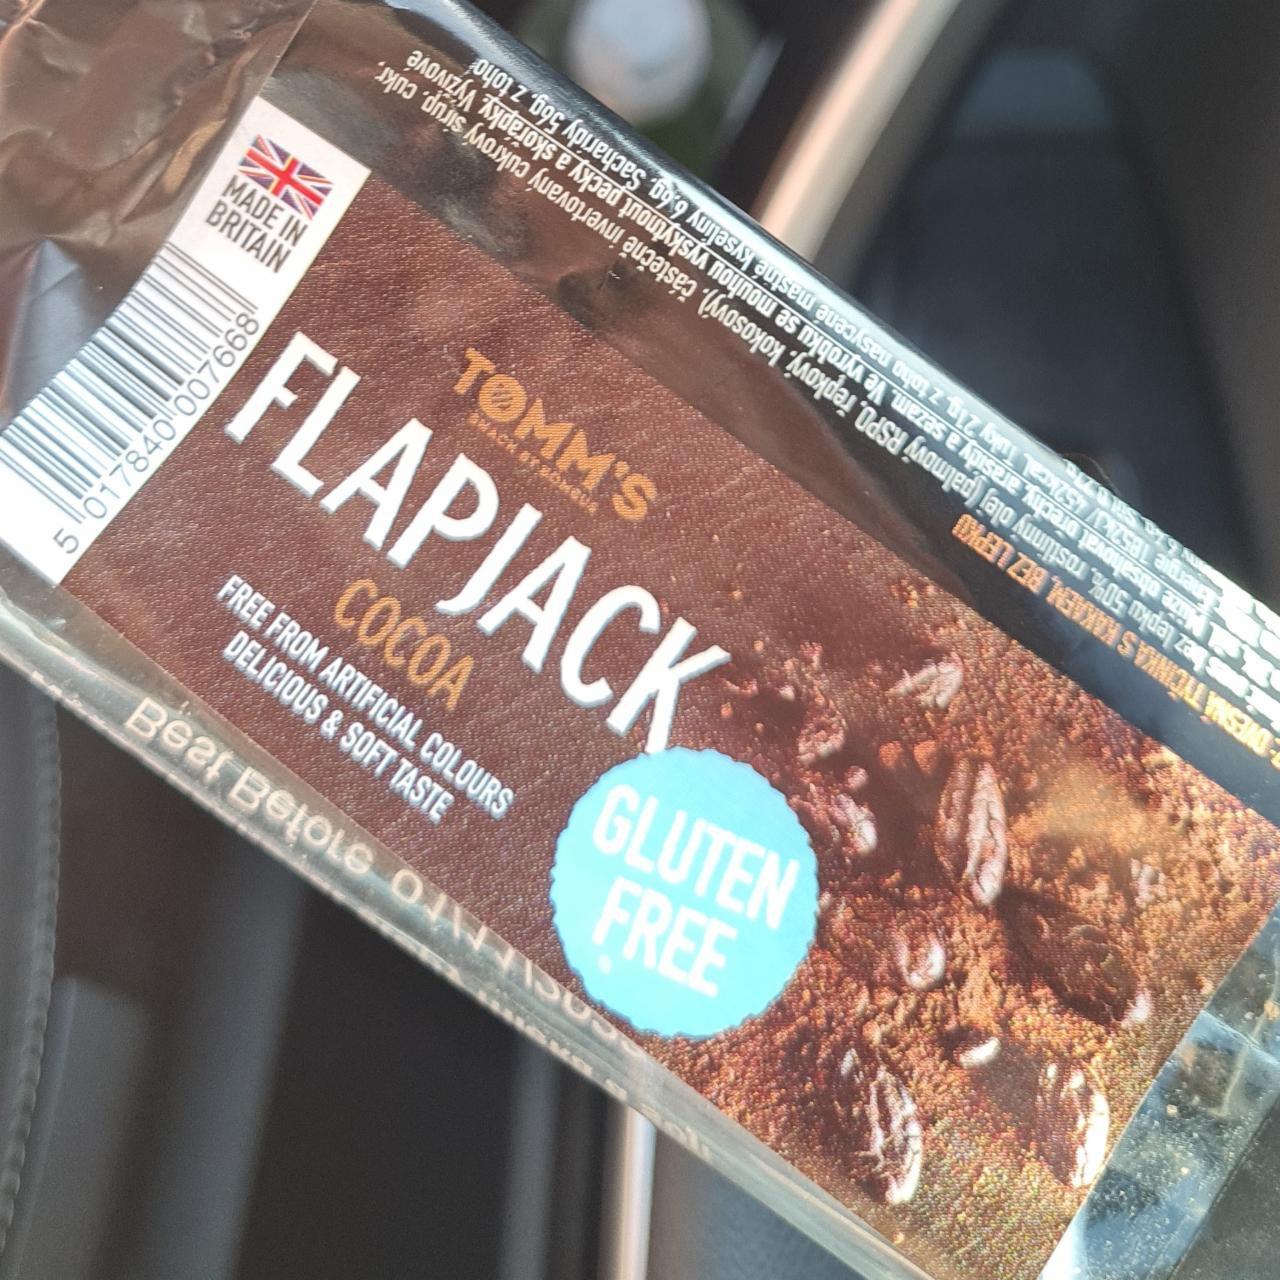 Képek - Flapjack cocoa gluten free Tomm's